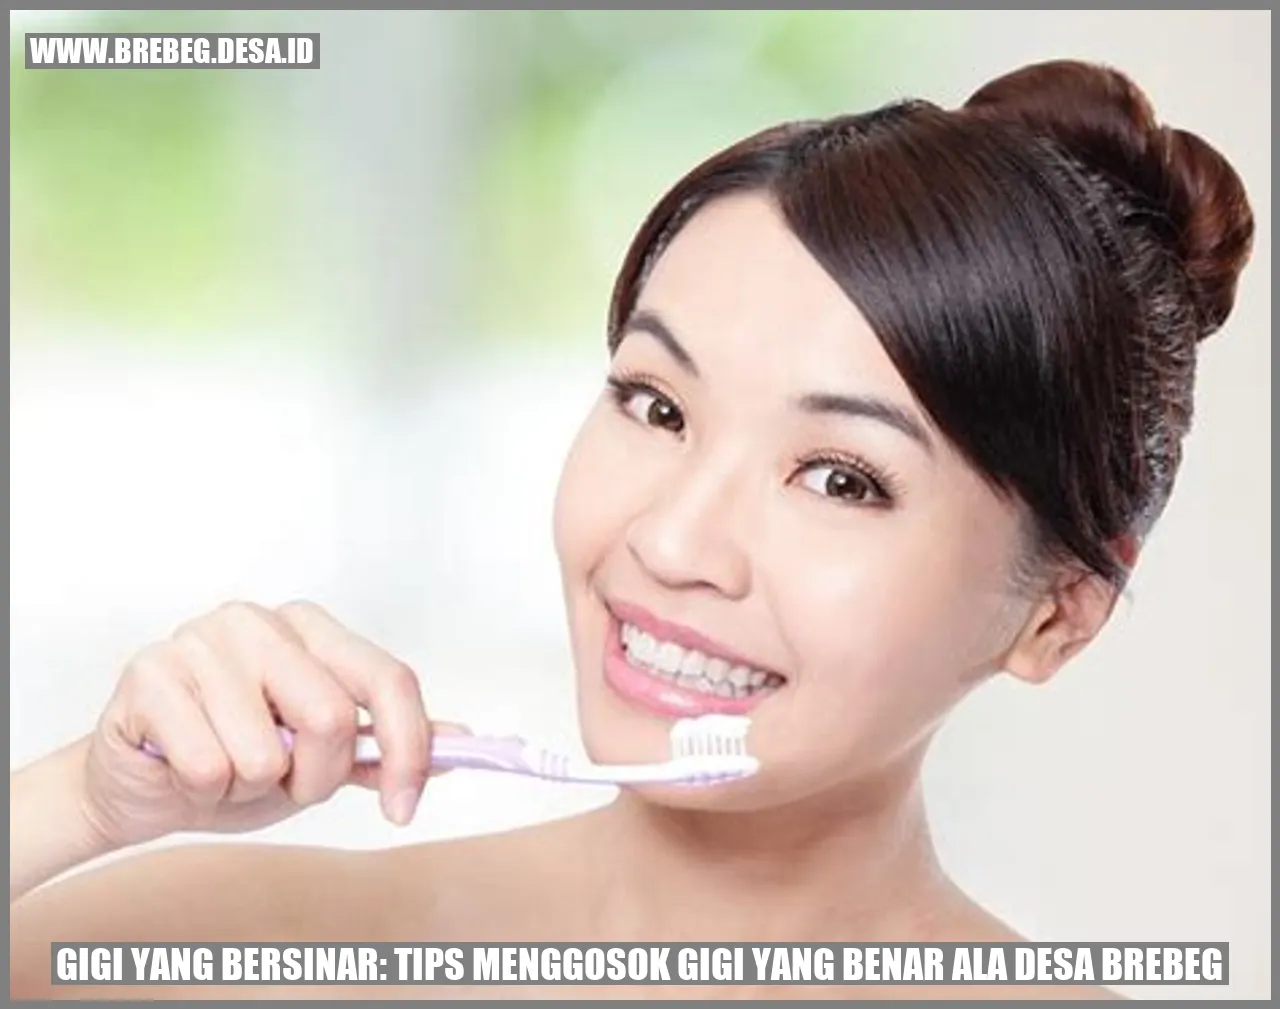 Gigi yang Bersinar: Tips Menggosok Gigi yang Benar ala Desa Brebeg